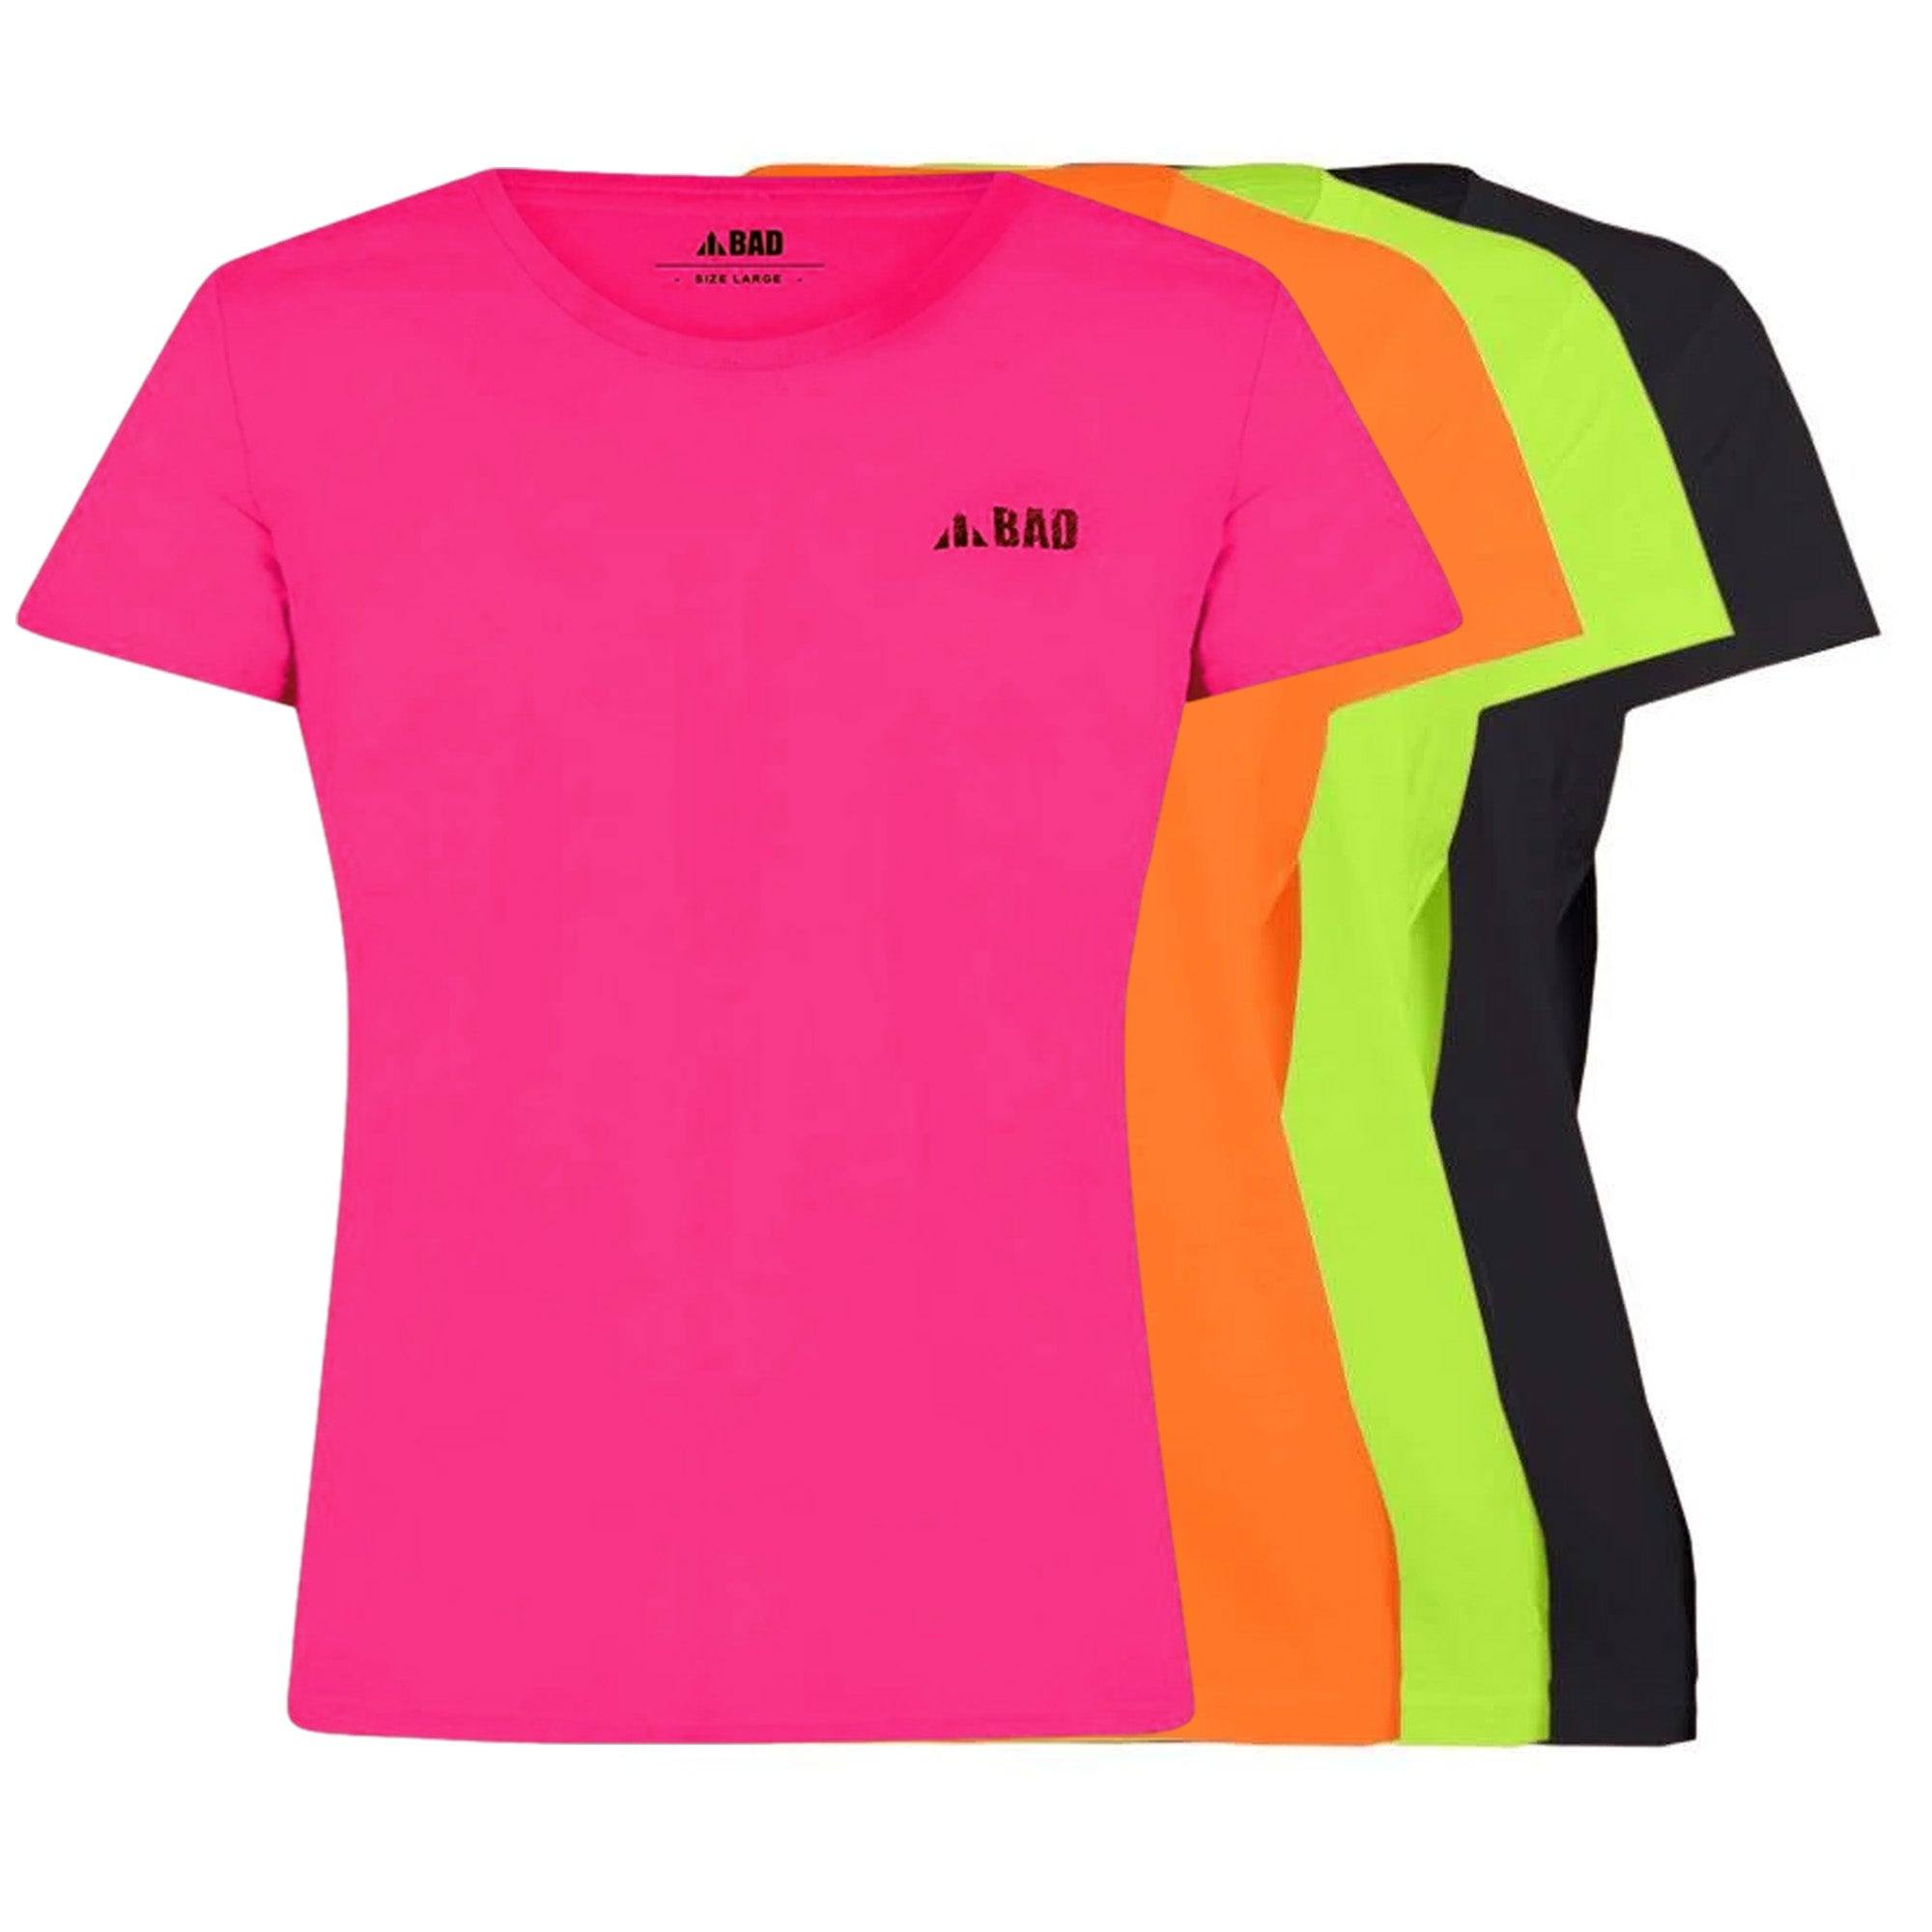 Trademark Woman's Short Sleeve T-Shirt - BAD - Printibly